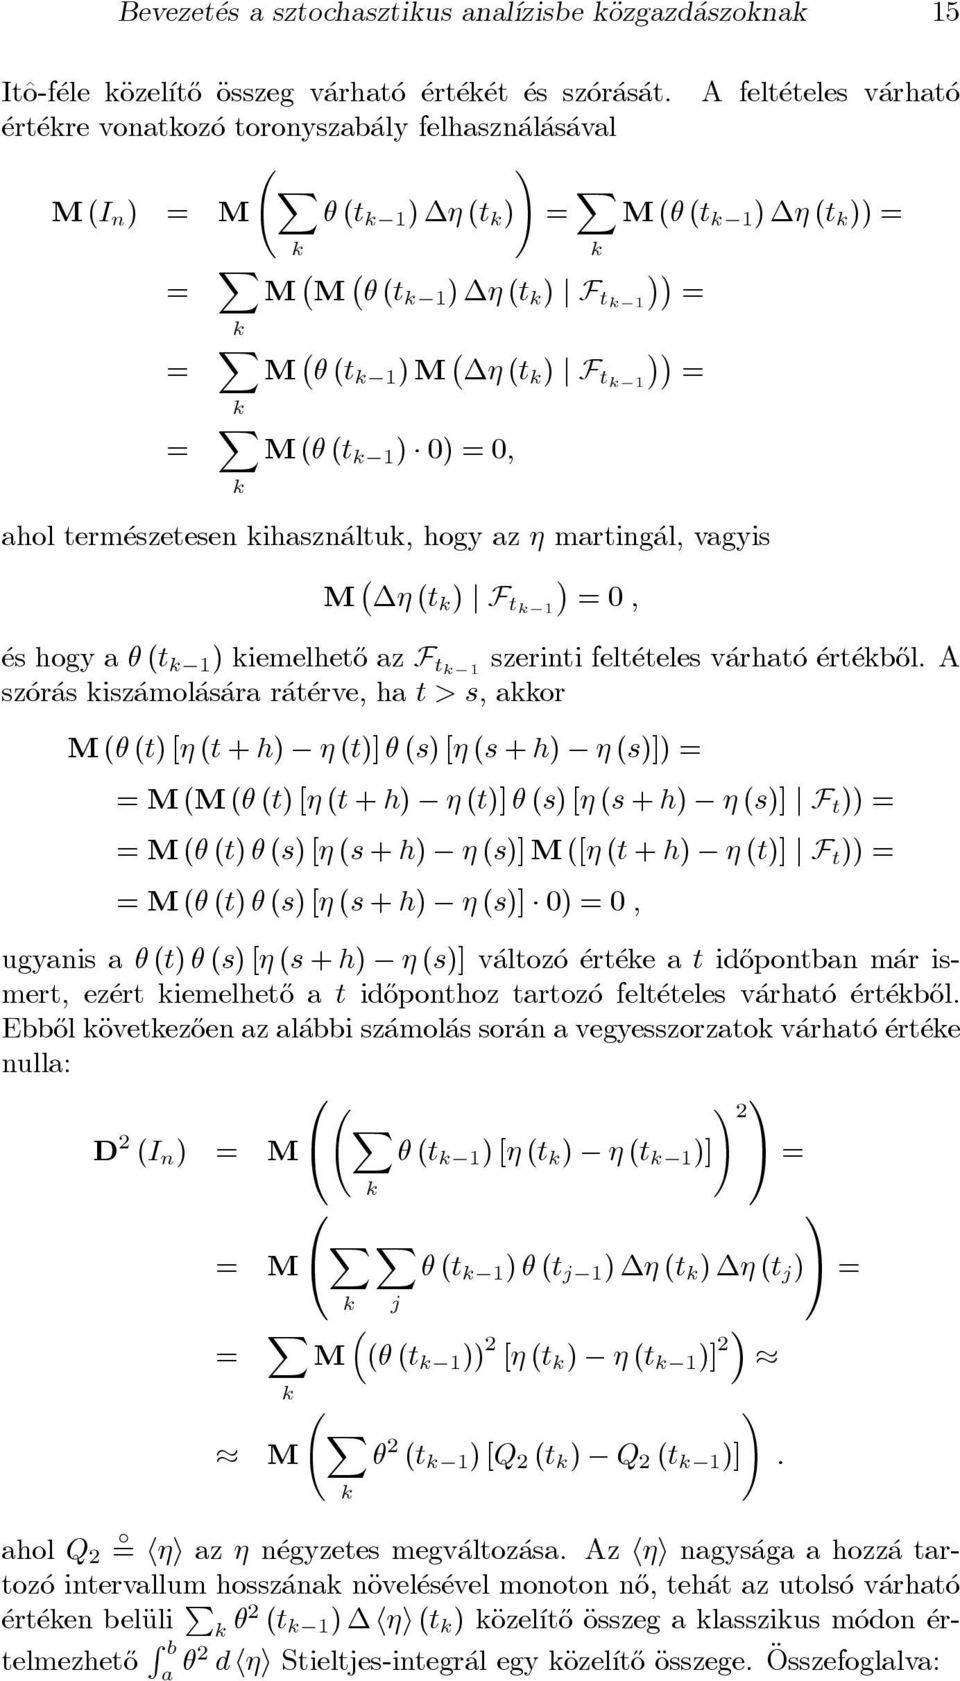 X M(I n ) = M µ (t k 1 ) (t k ) = X M(µ (t k 1 ) (t k )) = k k = X M M µ (t k 1 ) (t k ) j F tk 1 = k = X k = X k M µ (t k 1 )M (t k ) j F tk 1 = M(µ (t k 1 ) 0) = 0; ahol term eszetesen kihaszn